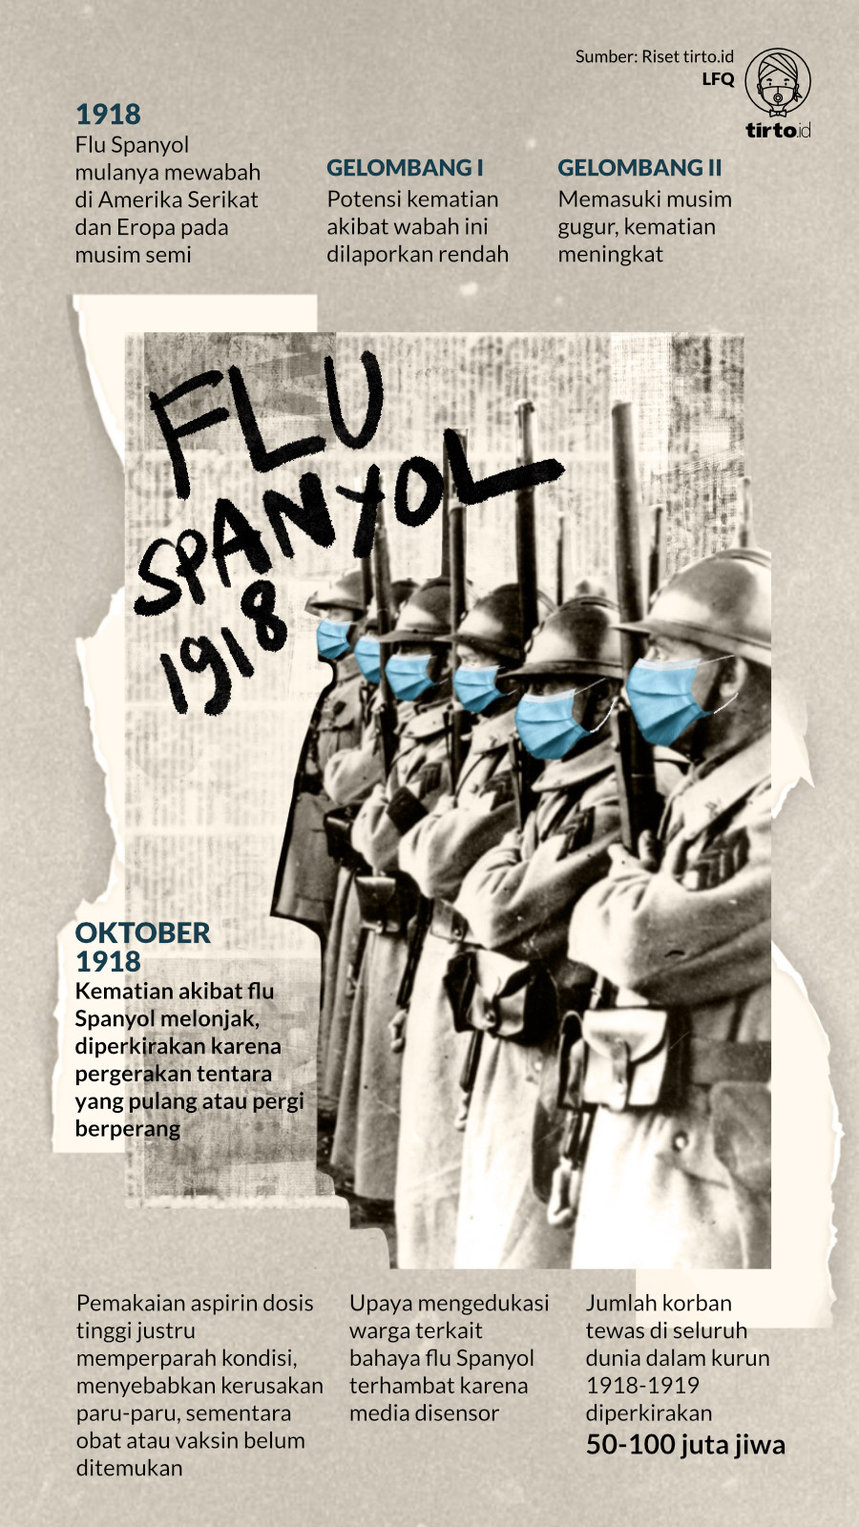 Spanyol flu Musim Kematian: